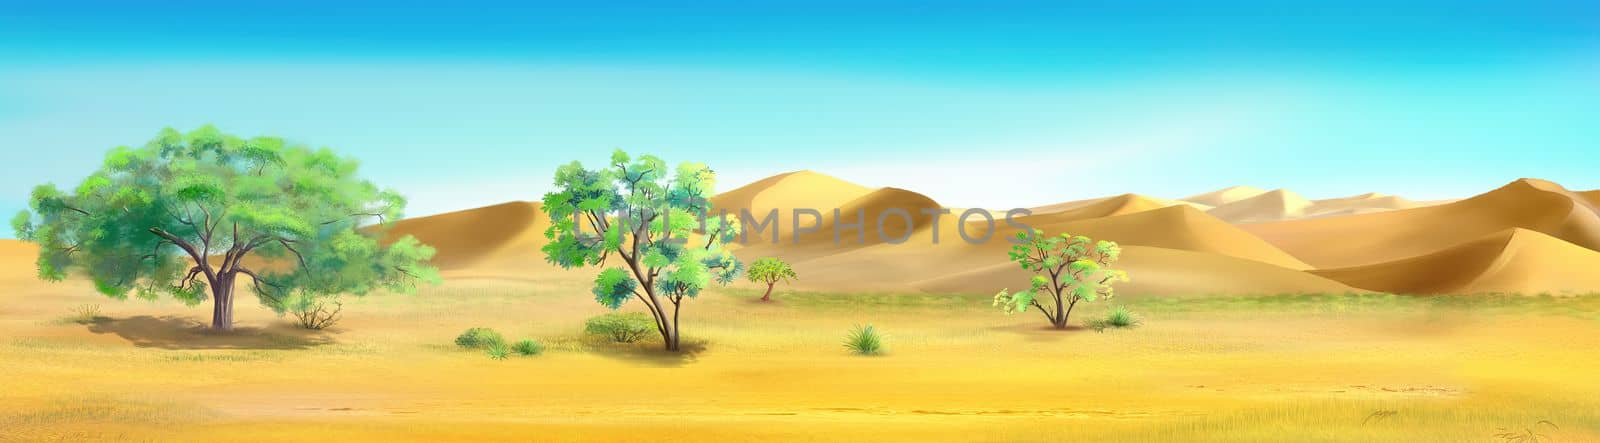 Trees on the edge of the desert illustration by Multipedia